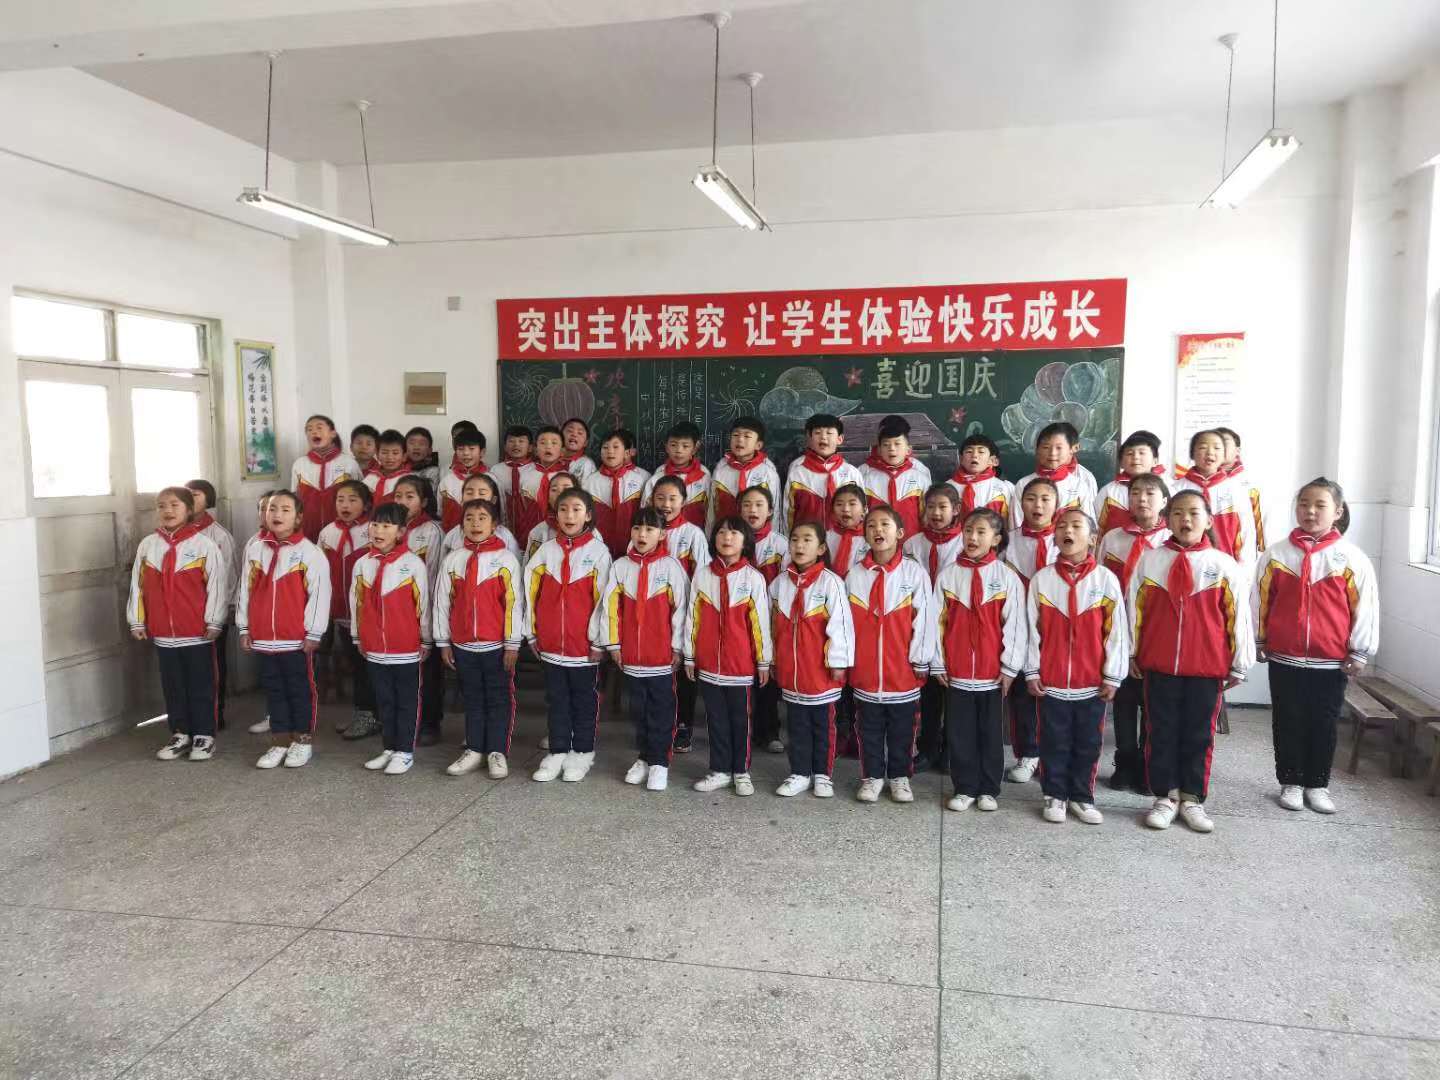 “唱响中国梦”——合沟中心小学校园文化艺术节合唱展示会